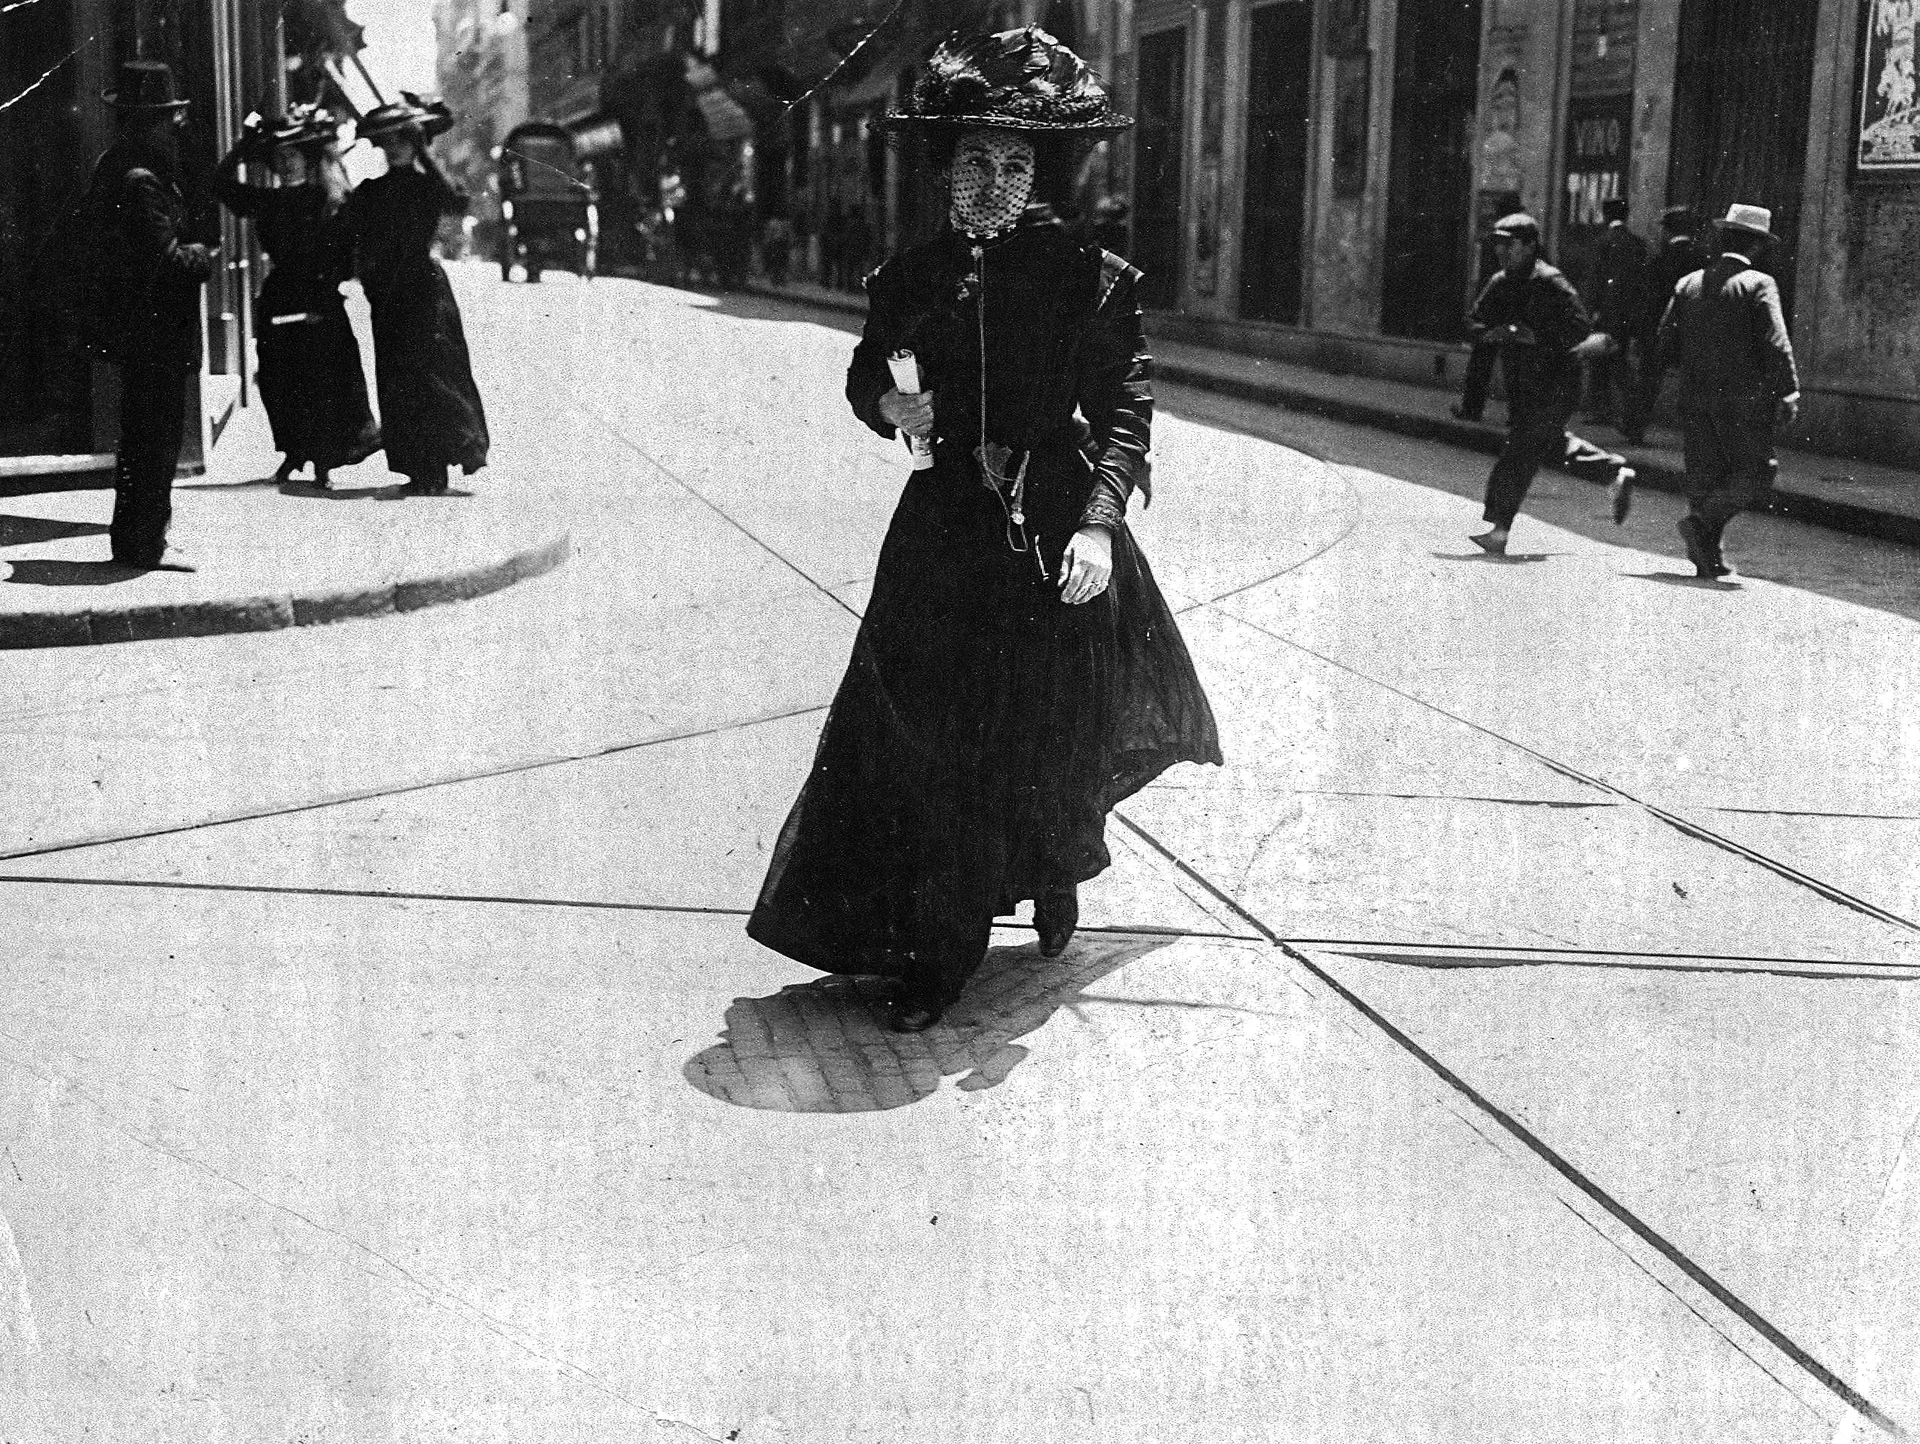 Sombreros, faldas largas y el color negro. Algunas de las claves de la vestimenta que se veía en la ciudad y que se recopila en el libro "Bien vestidos, Historia de la moda visual en Buenos Aires".